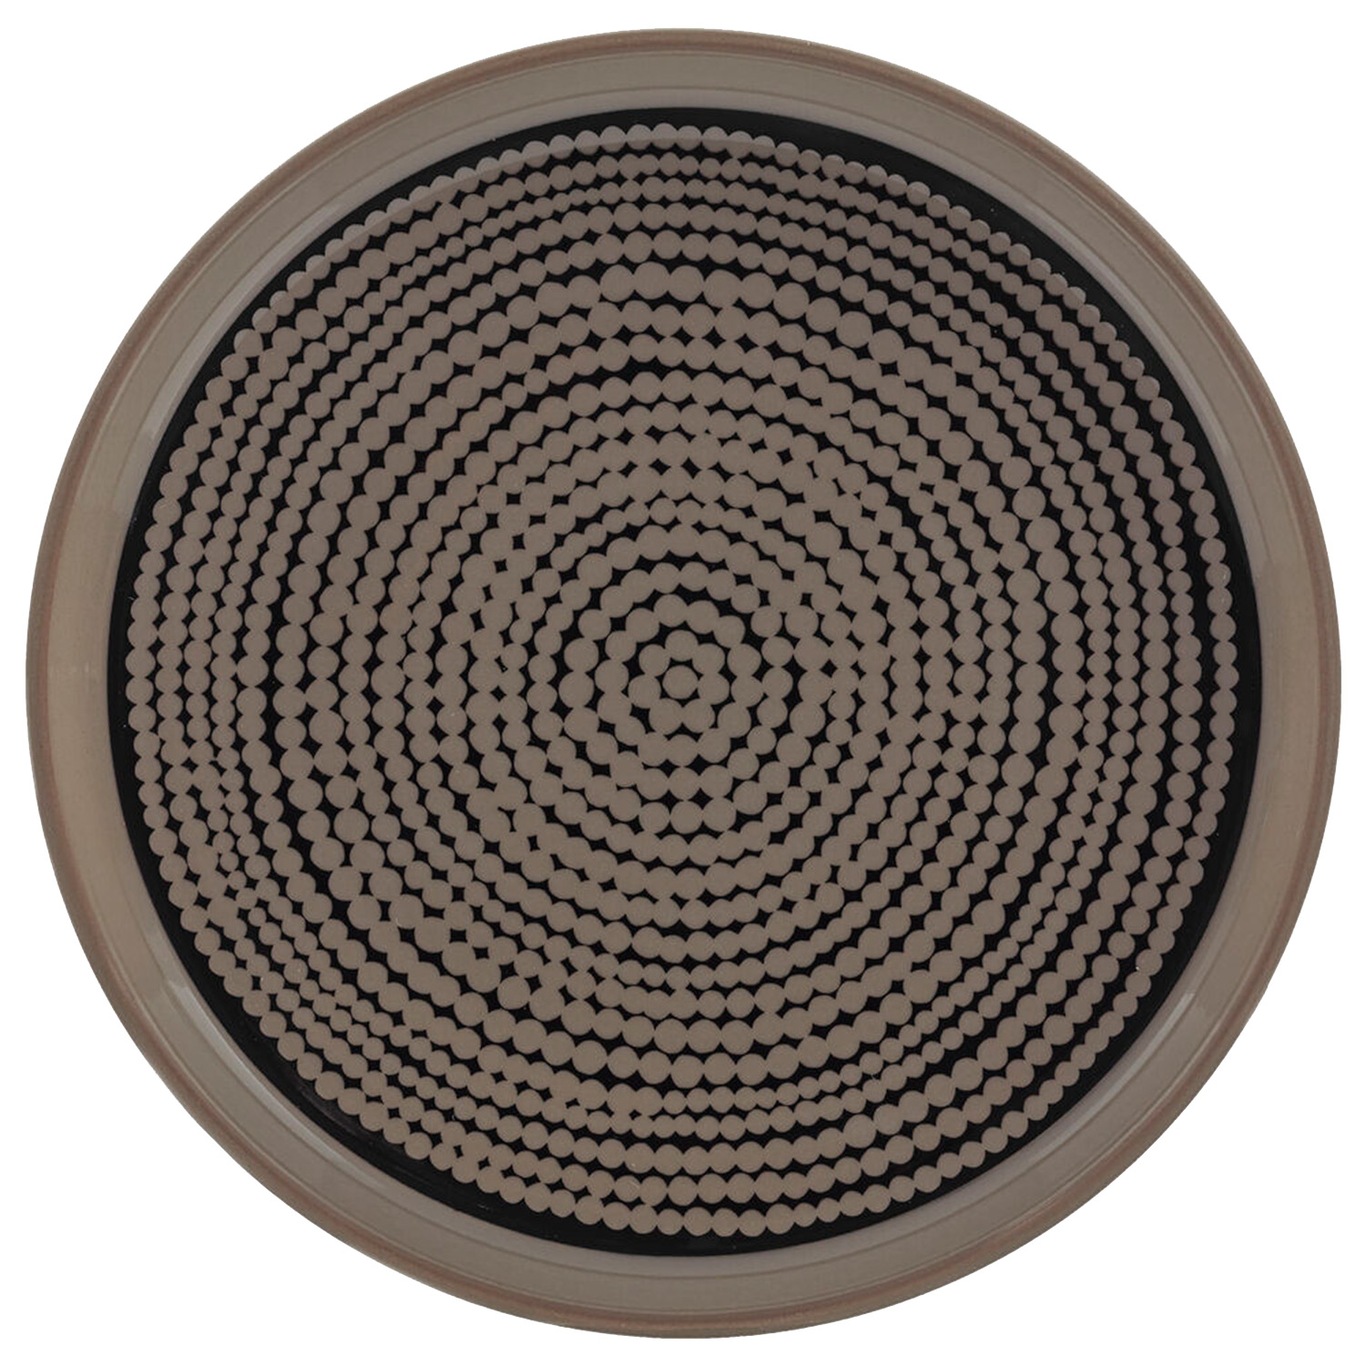 Oiva/Siirtolapuutarha Tallerken, Fremstillet af brunt stentøj med et velkendt, prikket mønster 13,5 cm, Sort/Terra